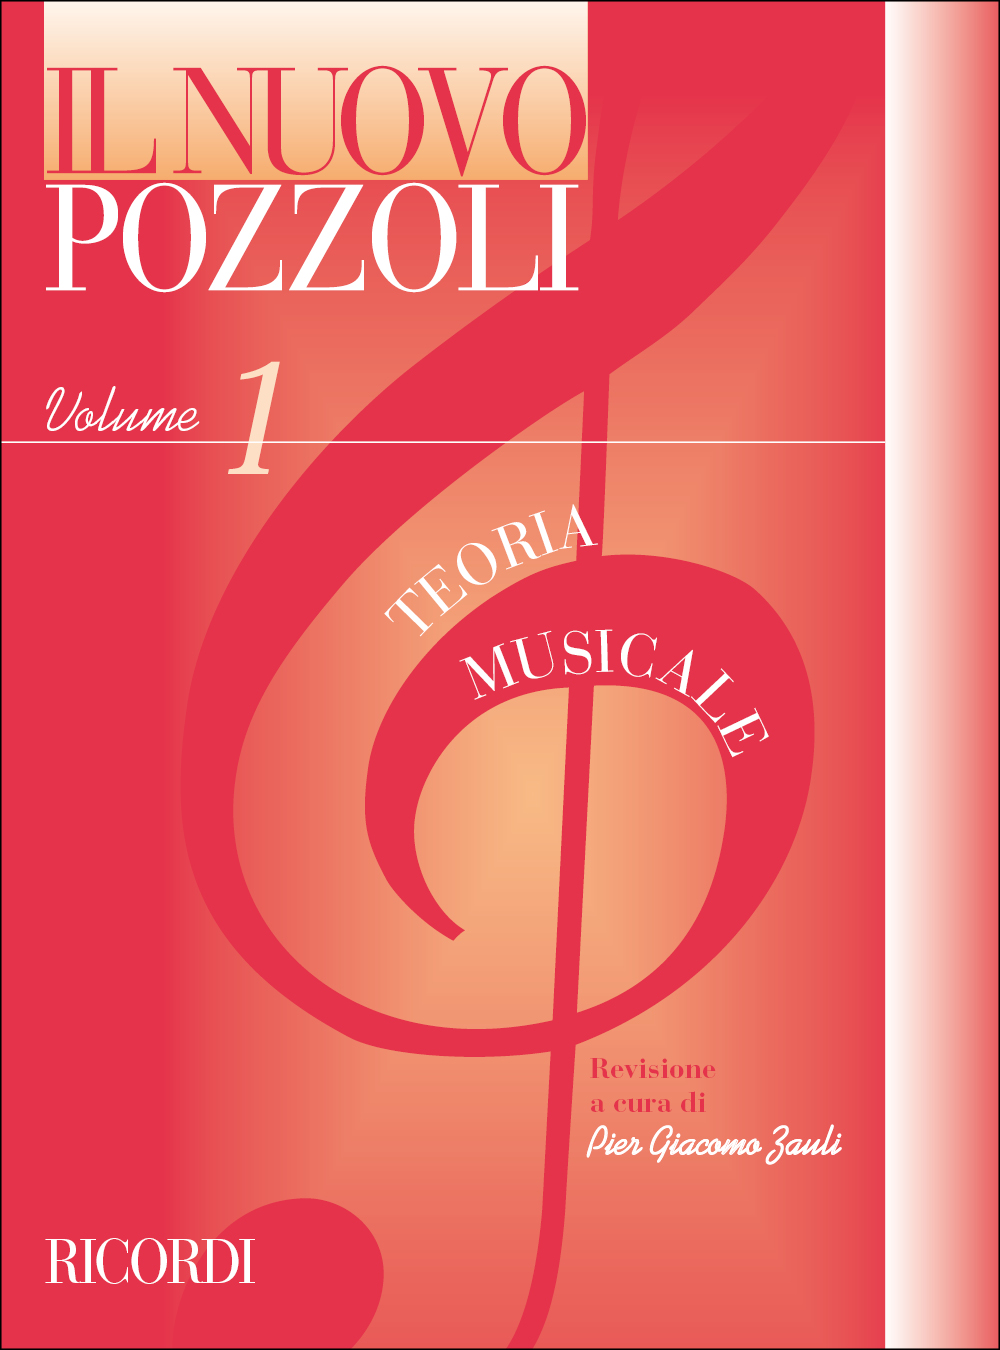 Ettore Pozzoli: Il Nuovo Pozzoli: Teoria Musicale